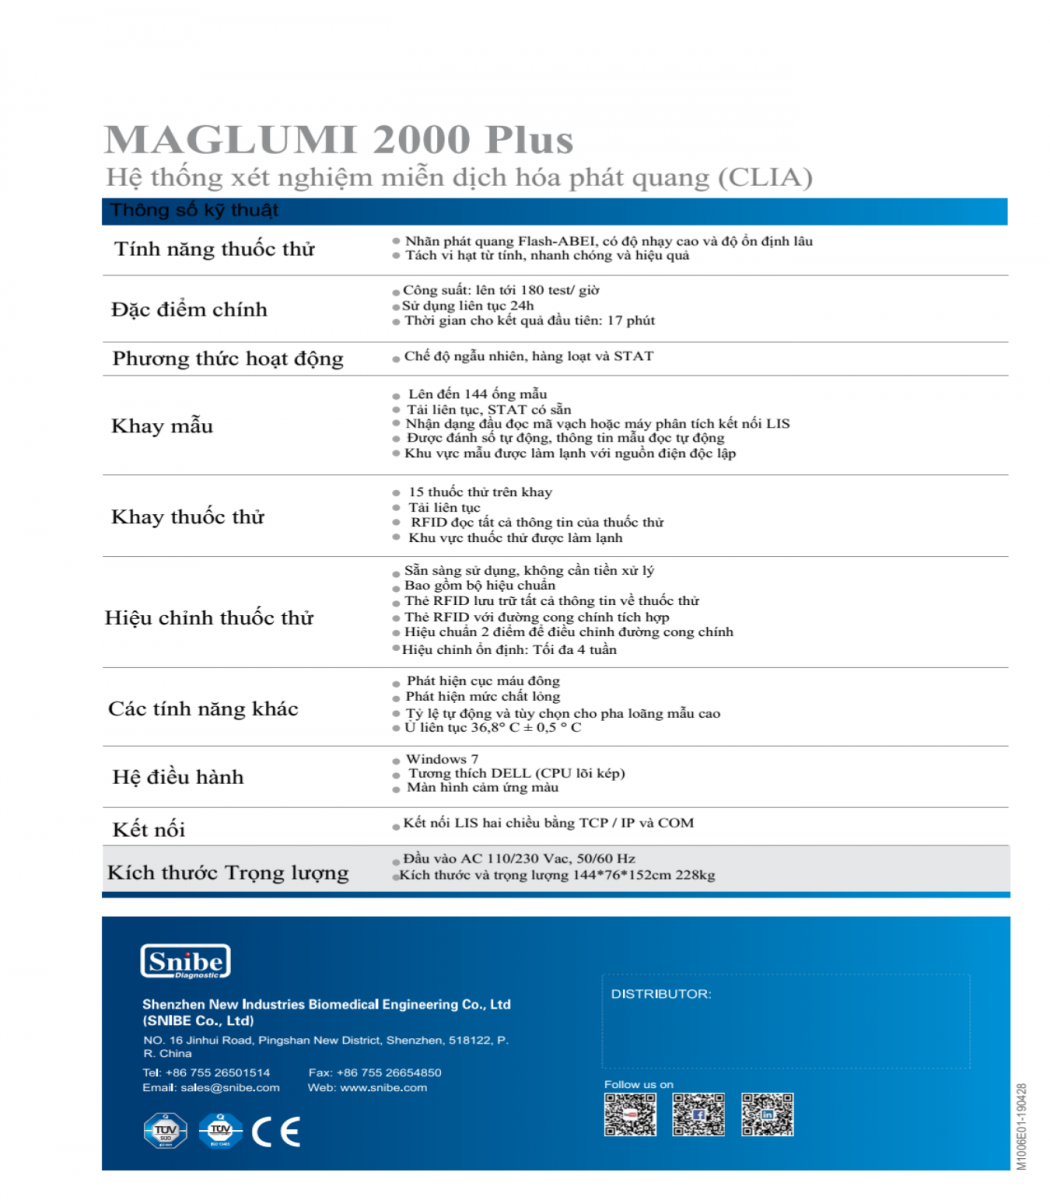 Máy miễn dịch tự động Maglumi 2000 Plus